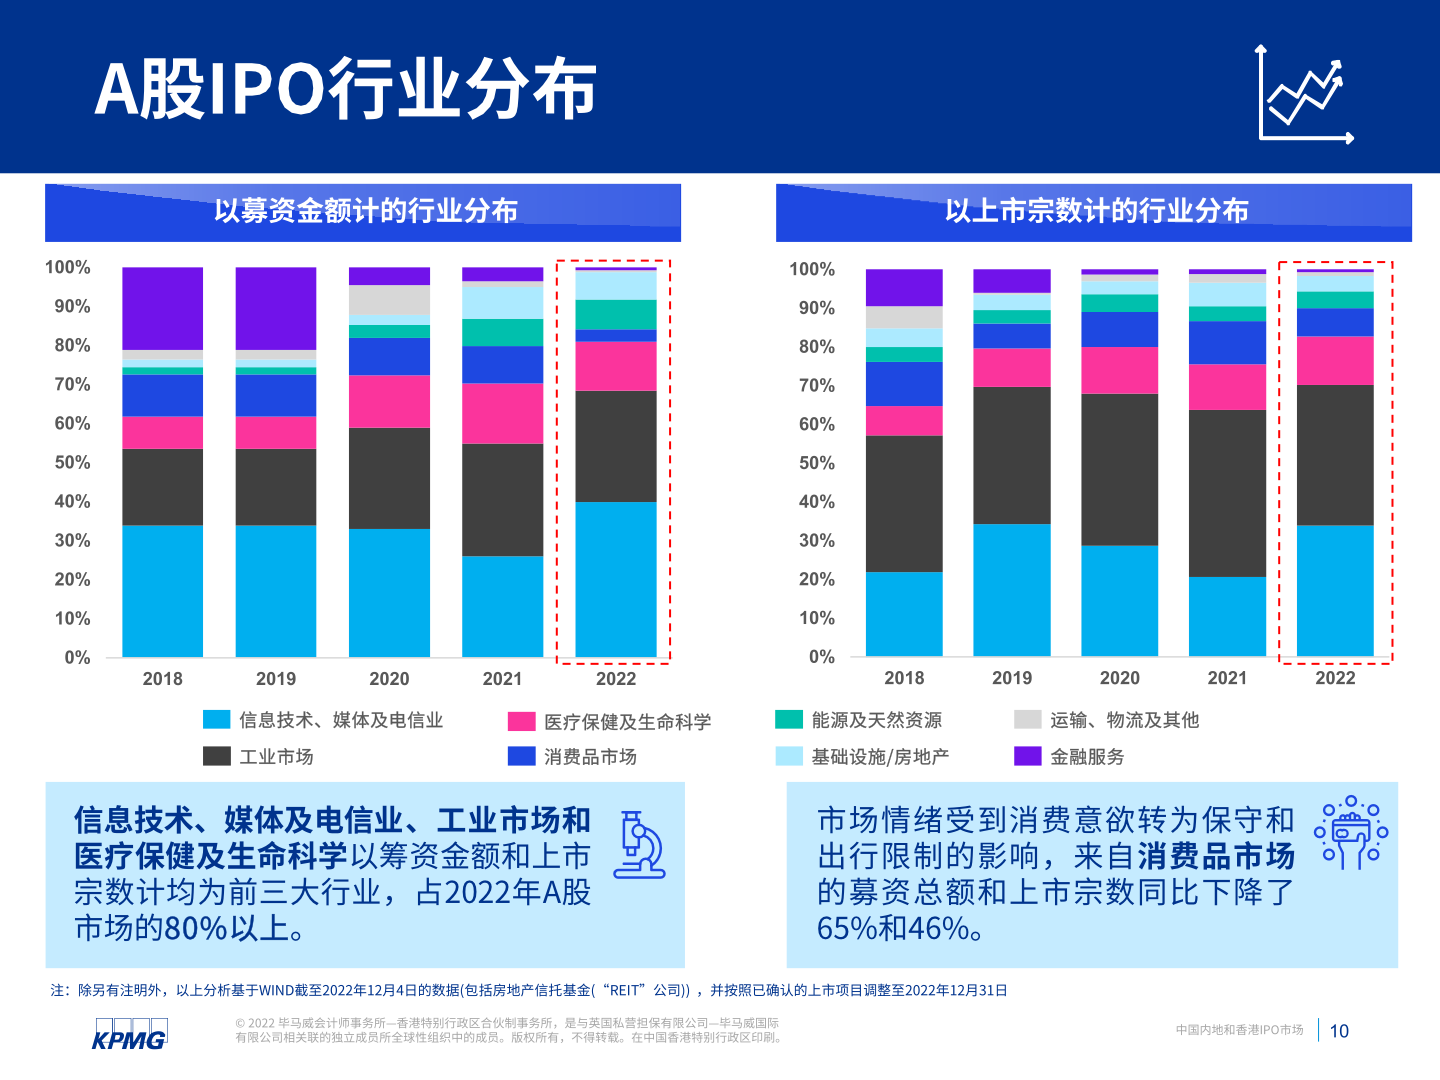 中国内地与香港IPO市场